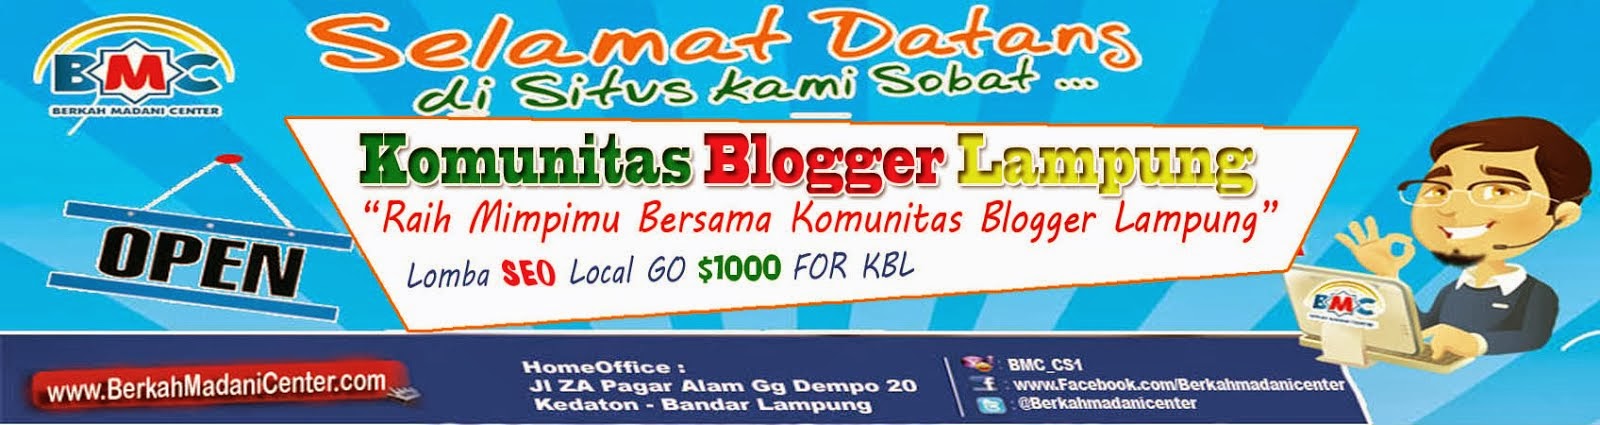 Komunitas Blogger Lampung